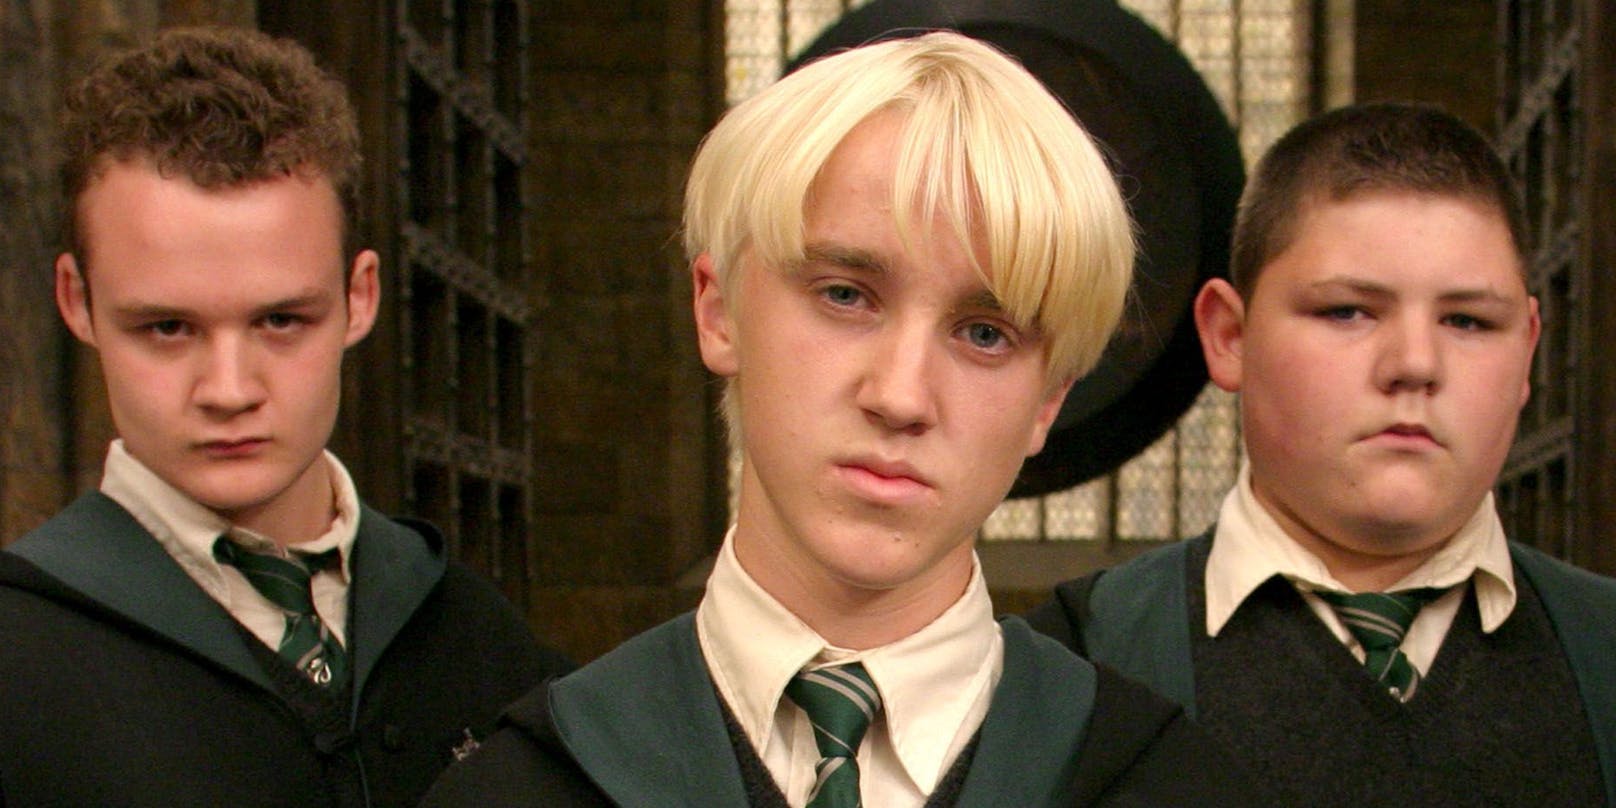 JAMIE WAYLETT spielte einen von Draco Malfoys (gespielt von TOM FELTON) Verbündeten in in "Harry Potter".